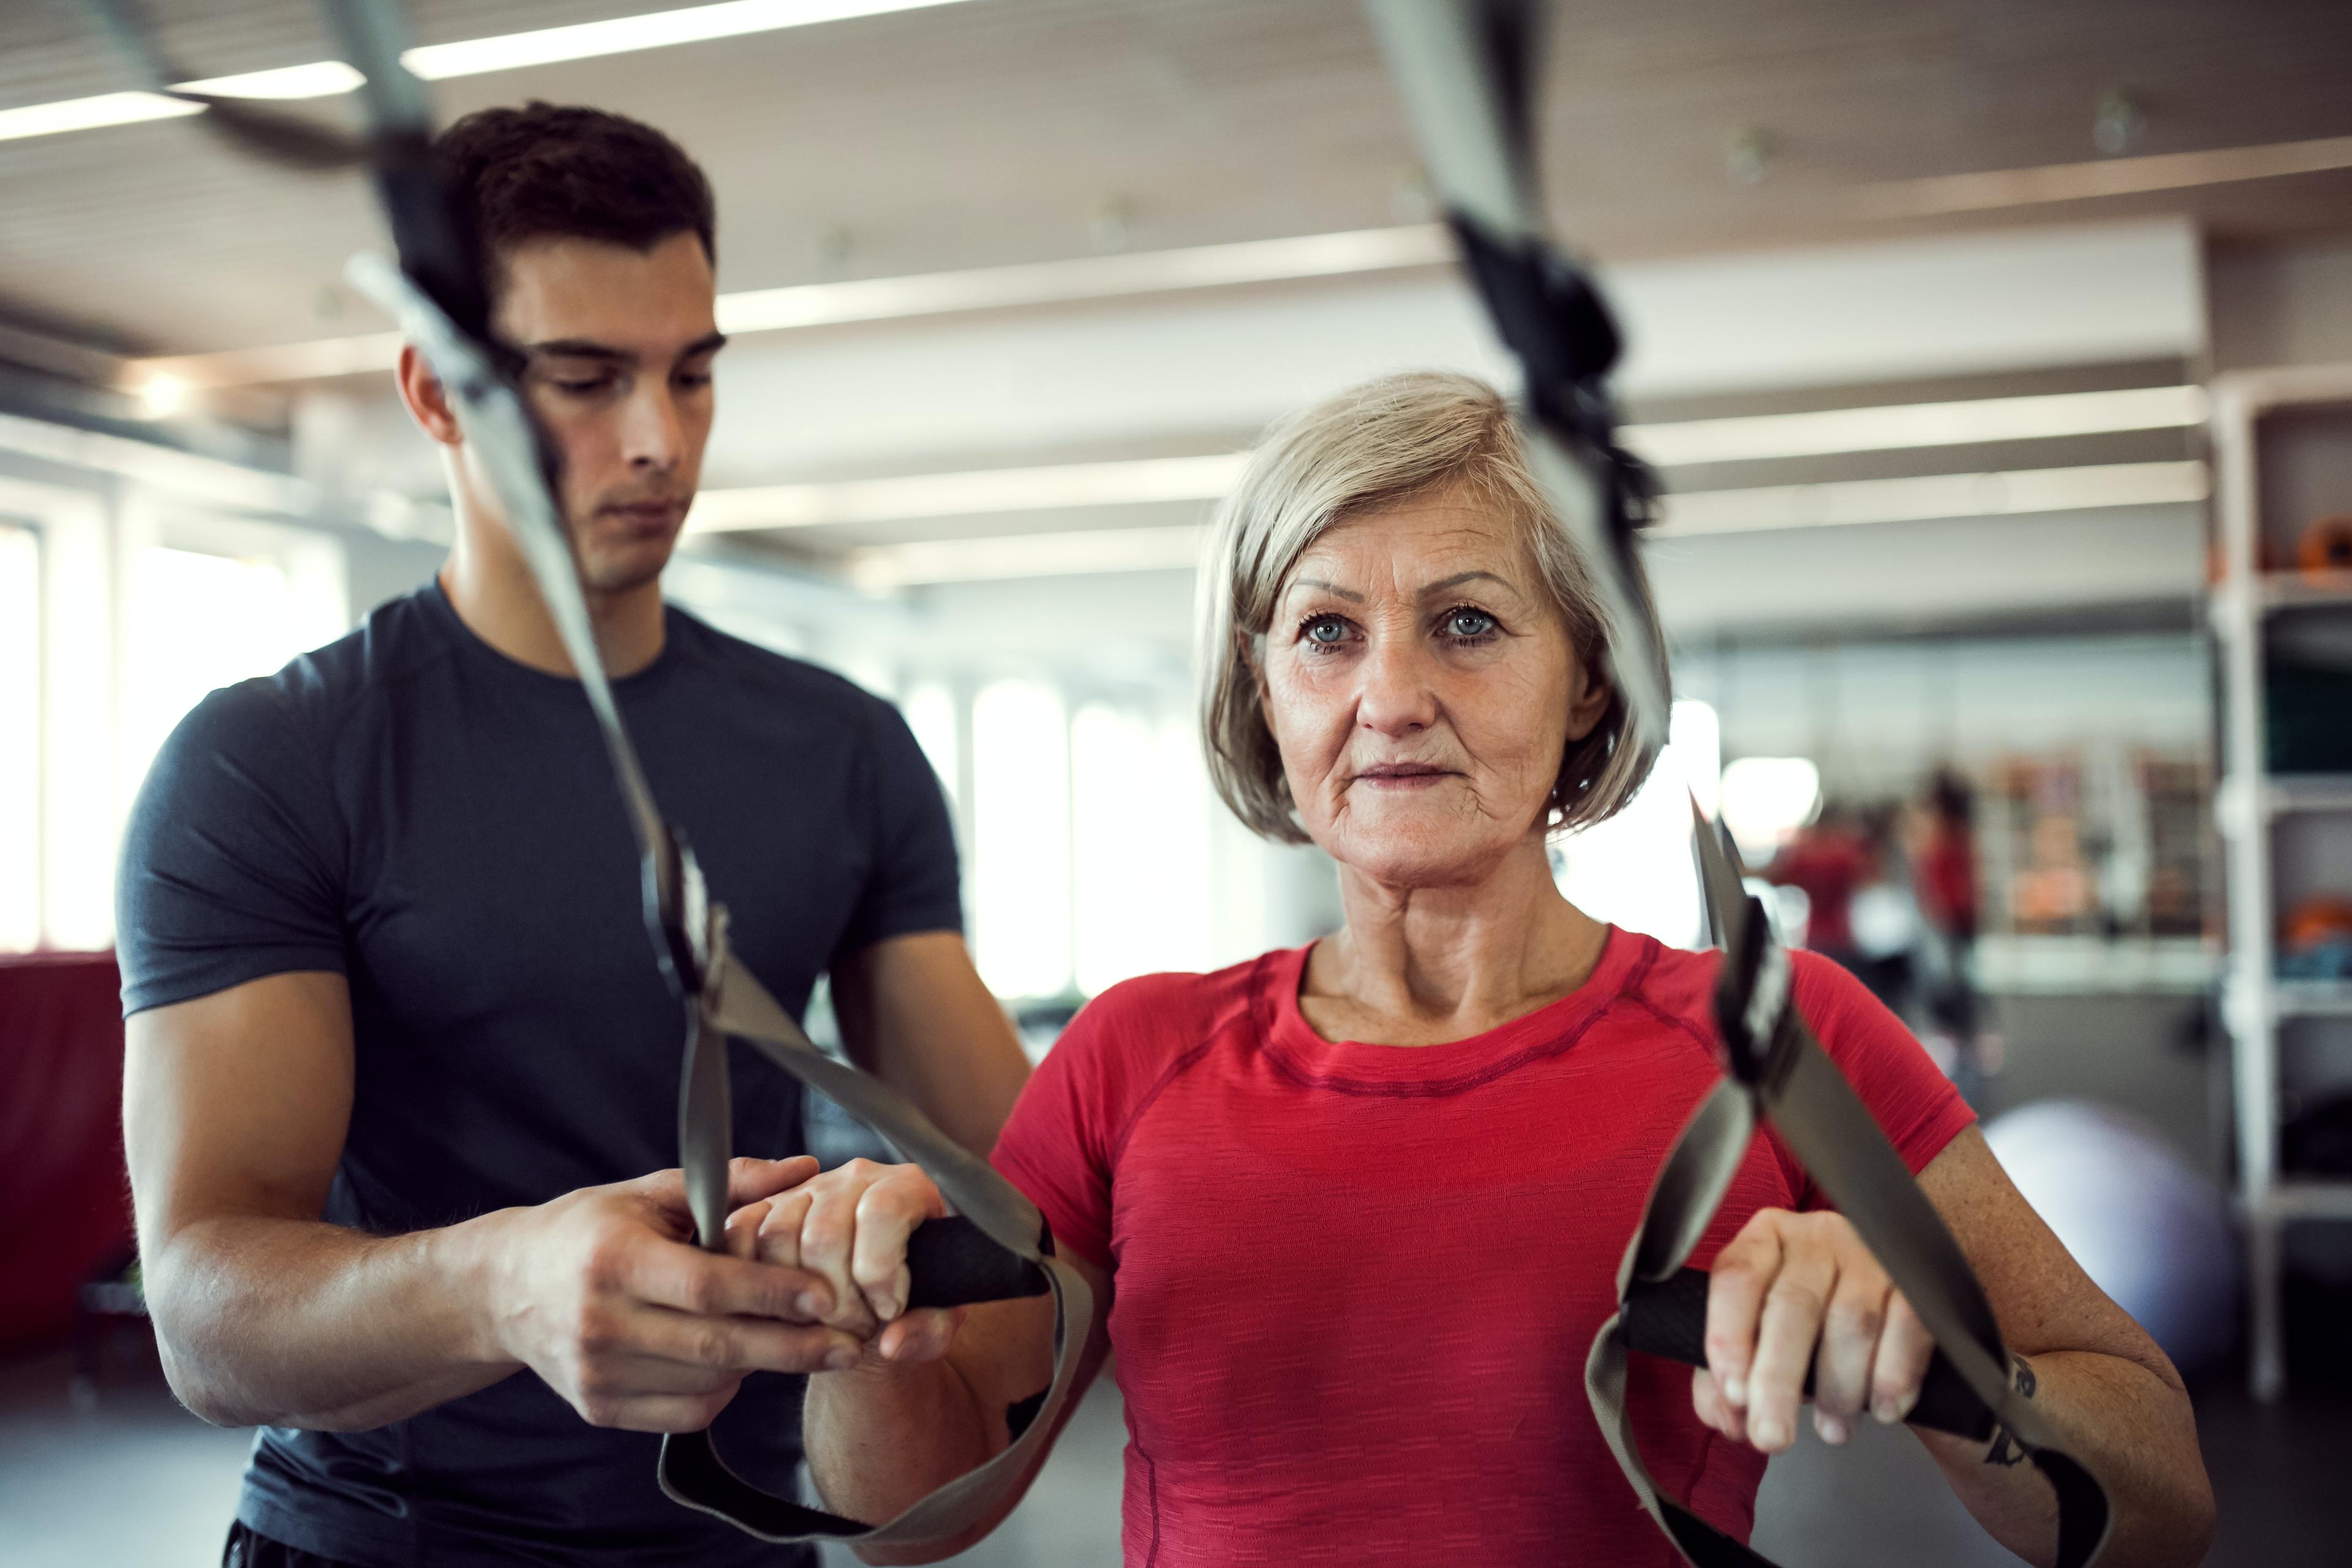 Ćwiczenia dla seniorów - jak dbać o sprawność w każdym wieku. Aktywność fizyczna dla osób starszych. Ćwiczenia dla osób starszych - seniorów w domu